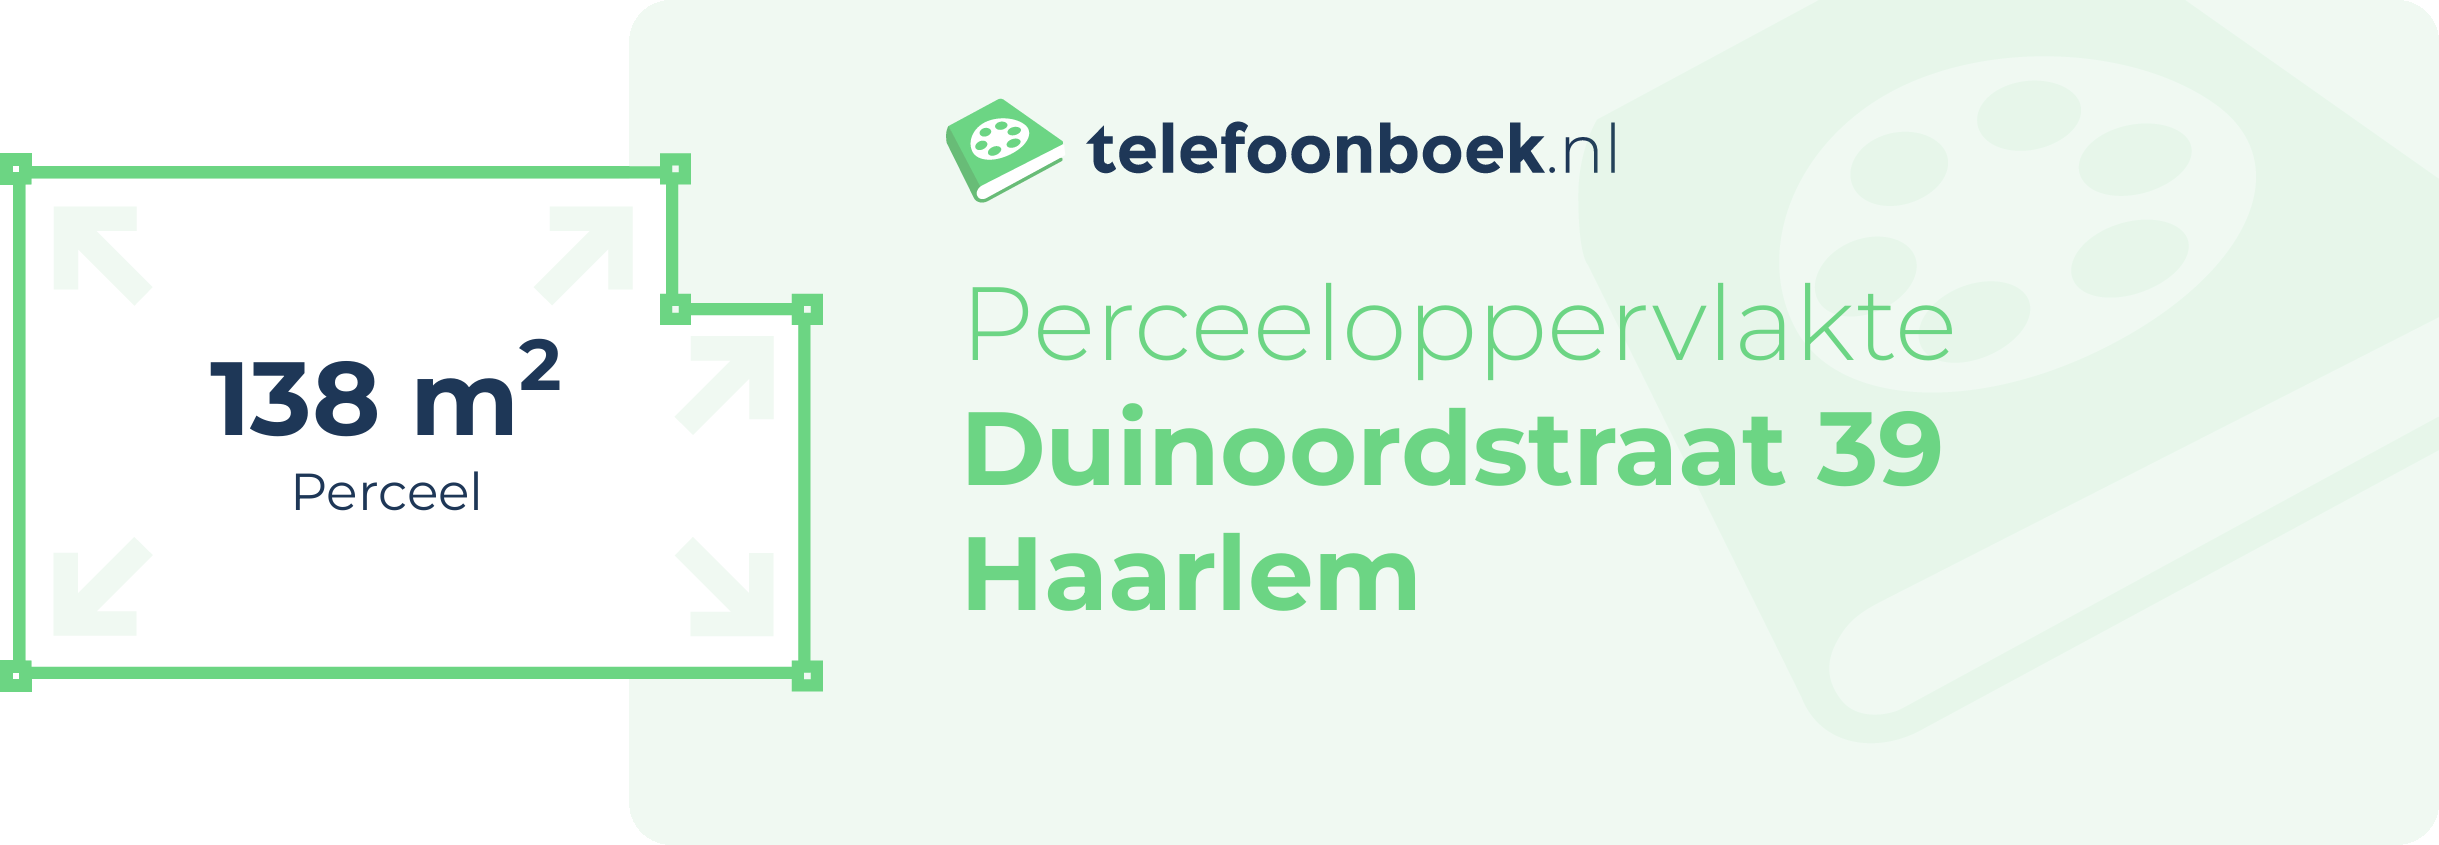 Perceeloppervlakte Duinoordstraat 39 Haarlem